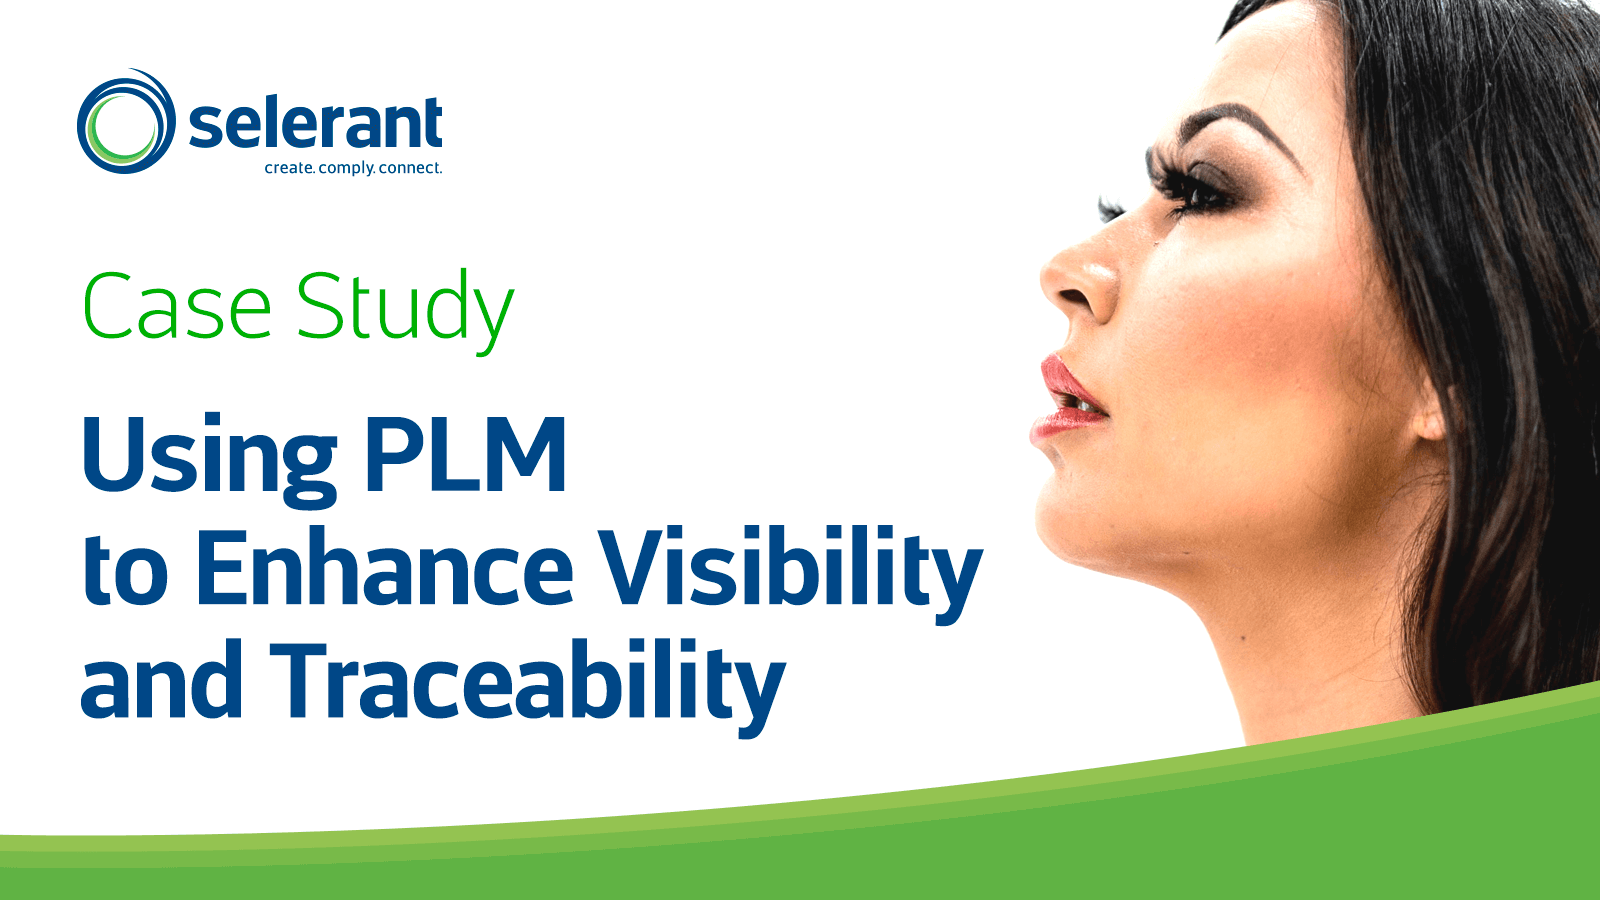 使用 Devex PLM 增强可见性和可追溯性